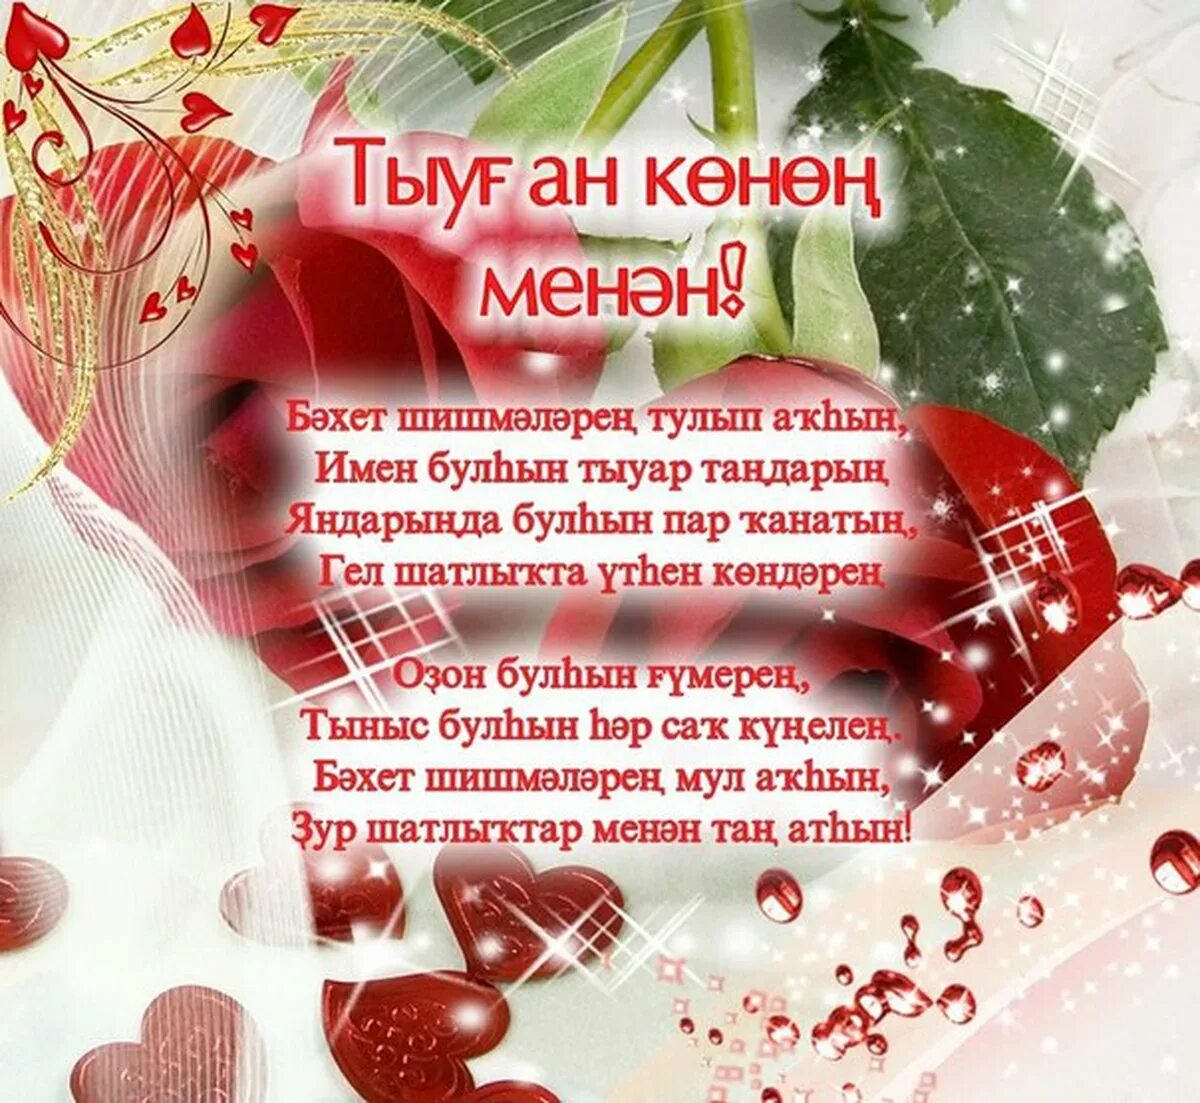 Поздравление с днем рождения на татарском папе. Открытка с юбилеем на башкирском языке. Поздравления с днём рождения на башкирском языке. Поздравление с юбилеем на башкирском языке. Поздравления с днём на башкирском языке.